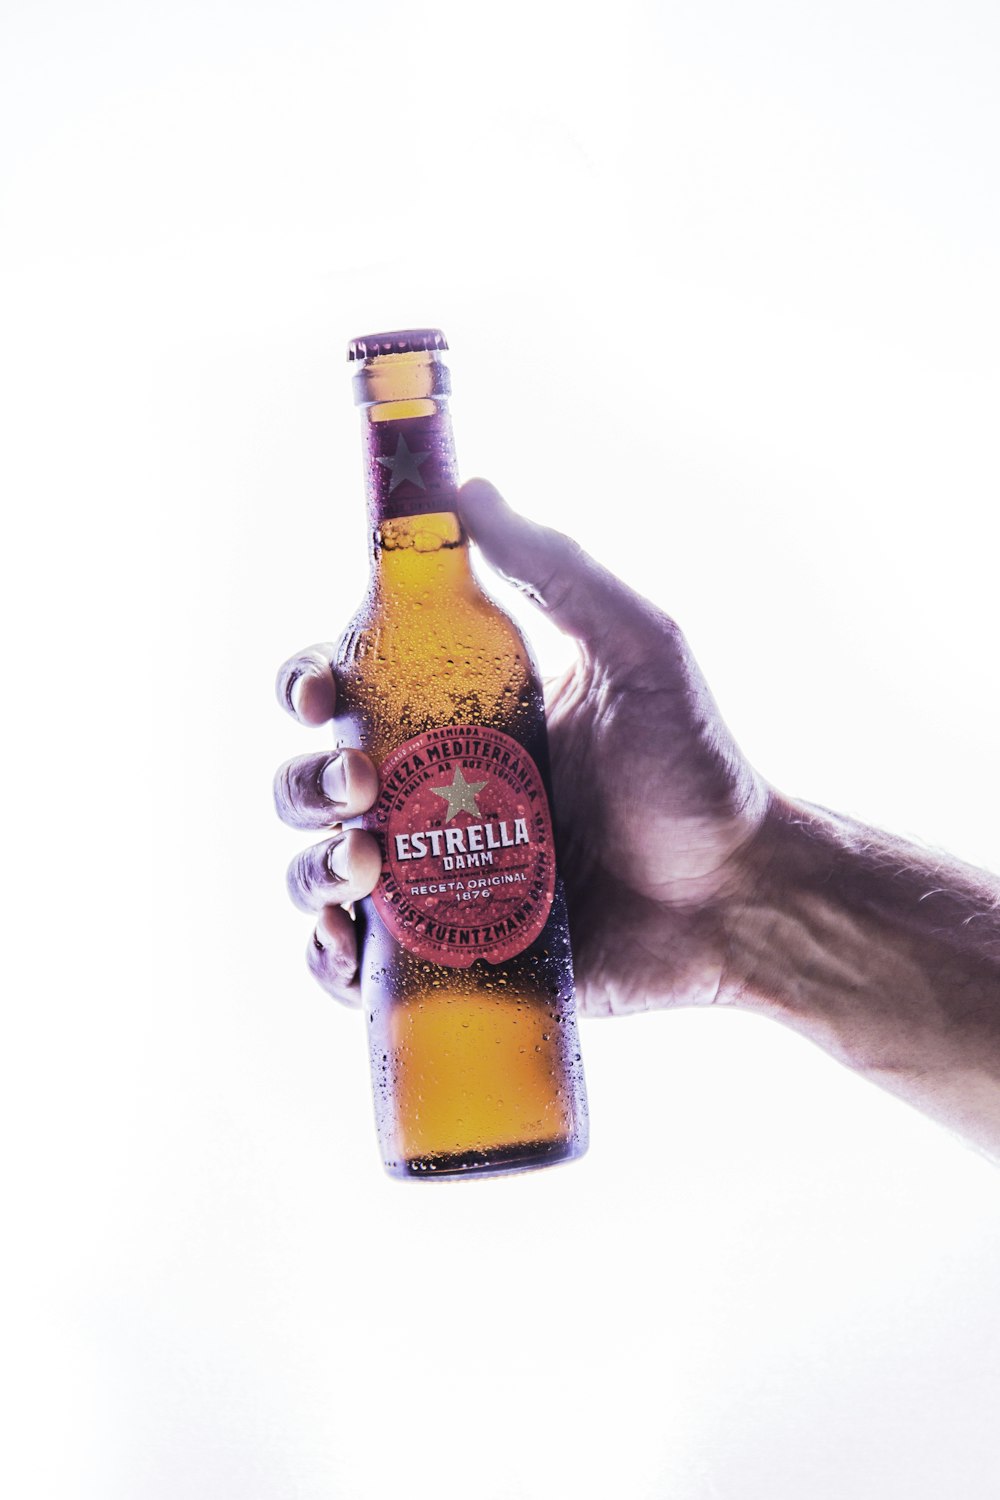 Estrella beer bottle